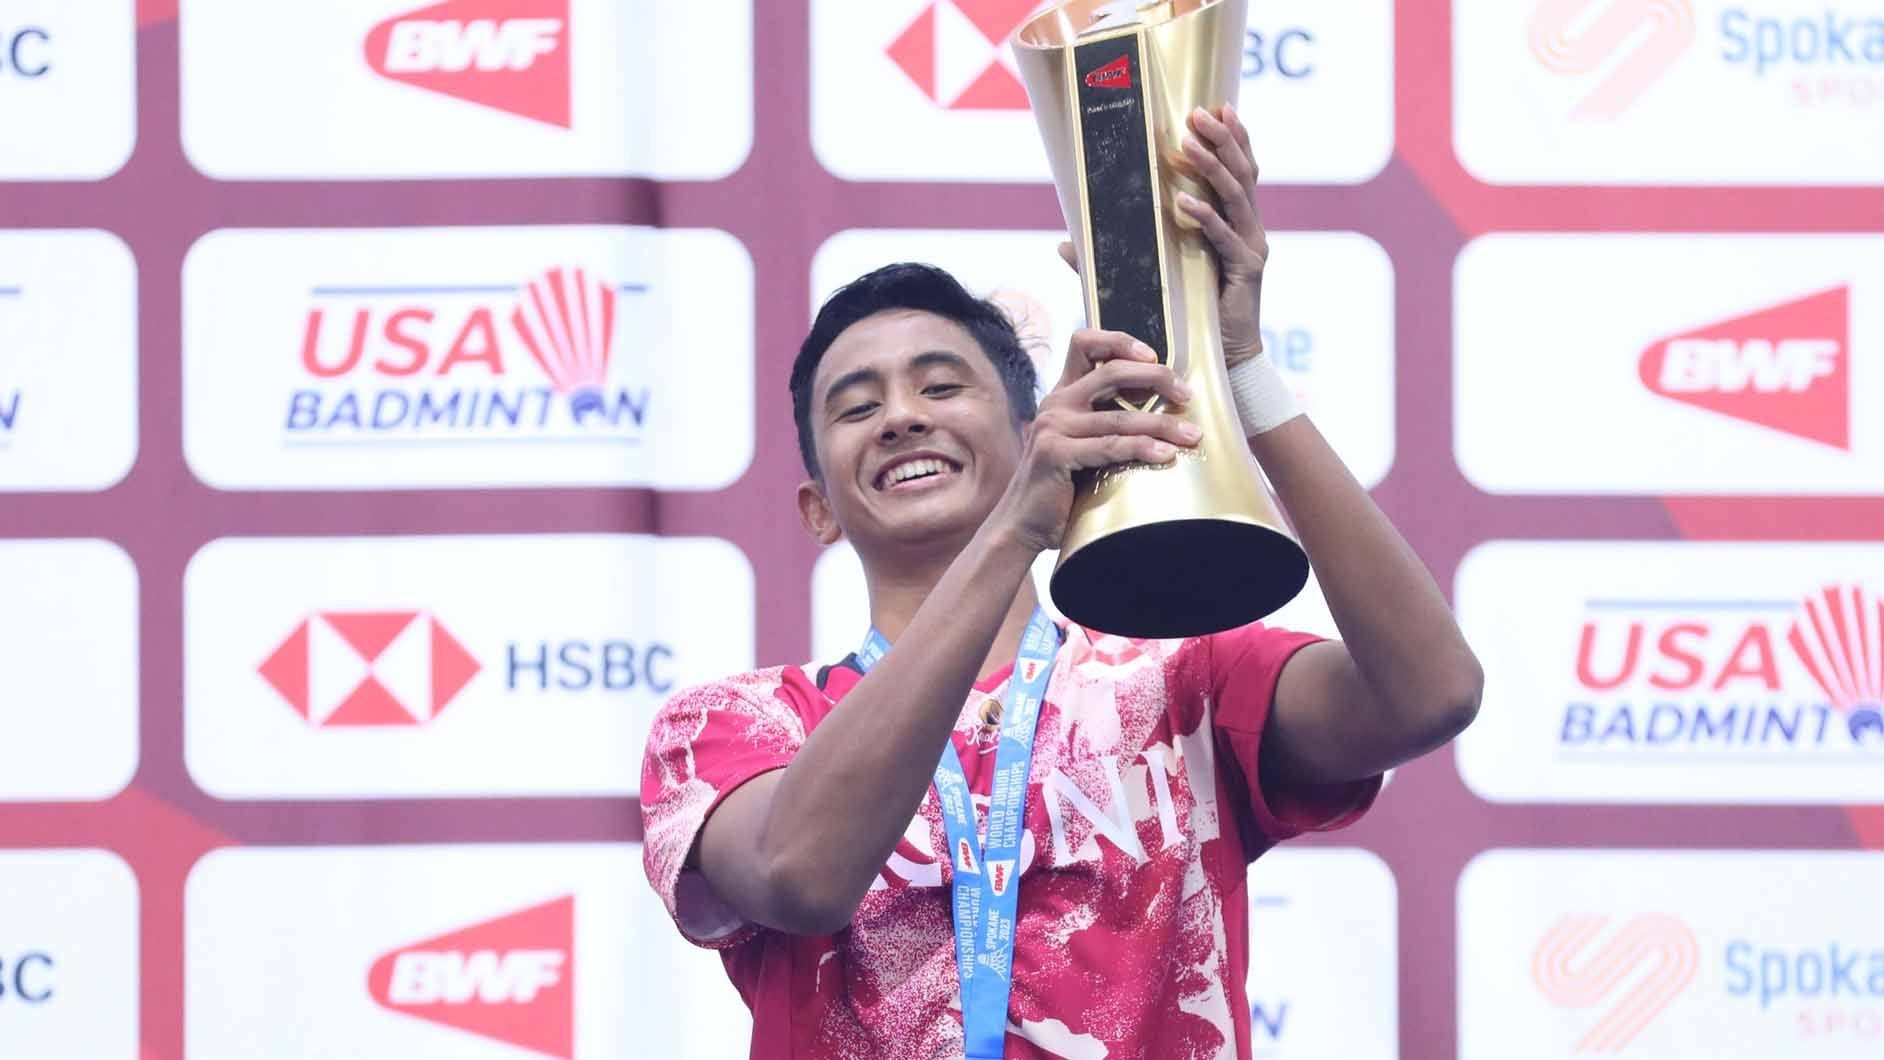 Mantan pelatih Taufik Hidayat, Mulyo Handoyo menyebutkan, Alwi Farhan sebagai aset masa depan Indonesia, dan berpotensi meraih emas Olimpiade 2028. (Foto: PBSI) Copyright: © PBSI